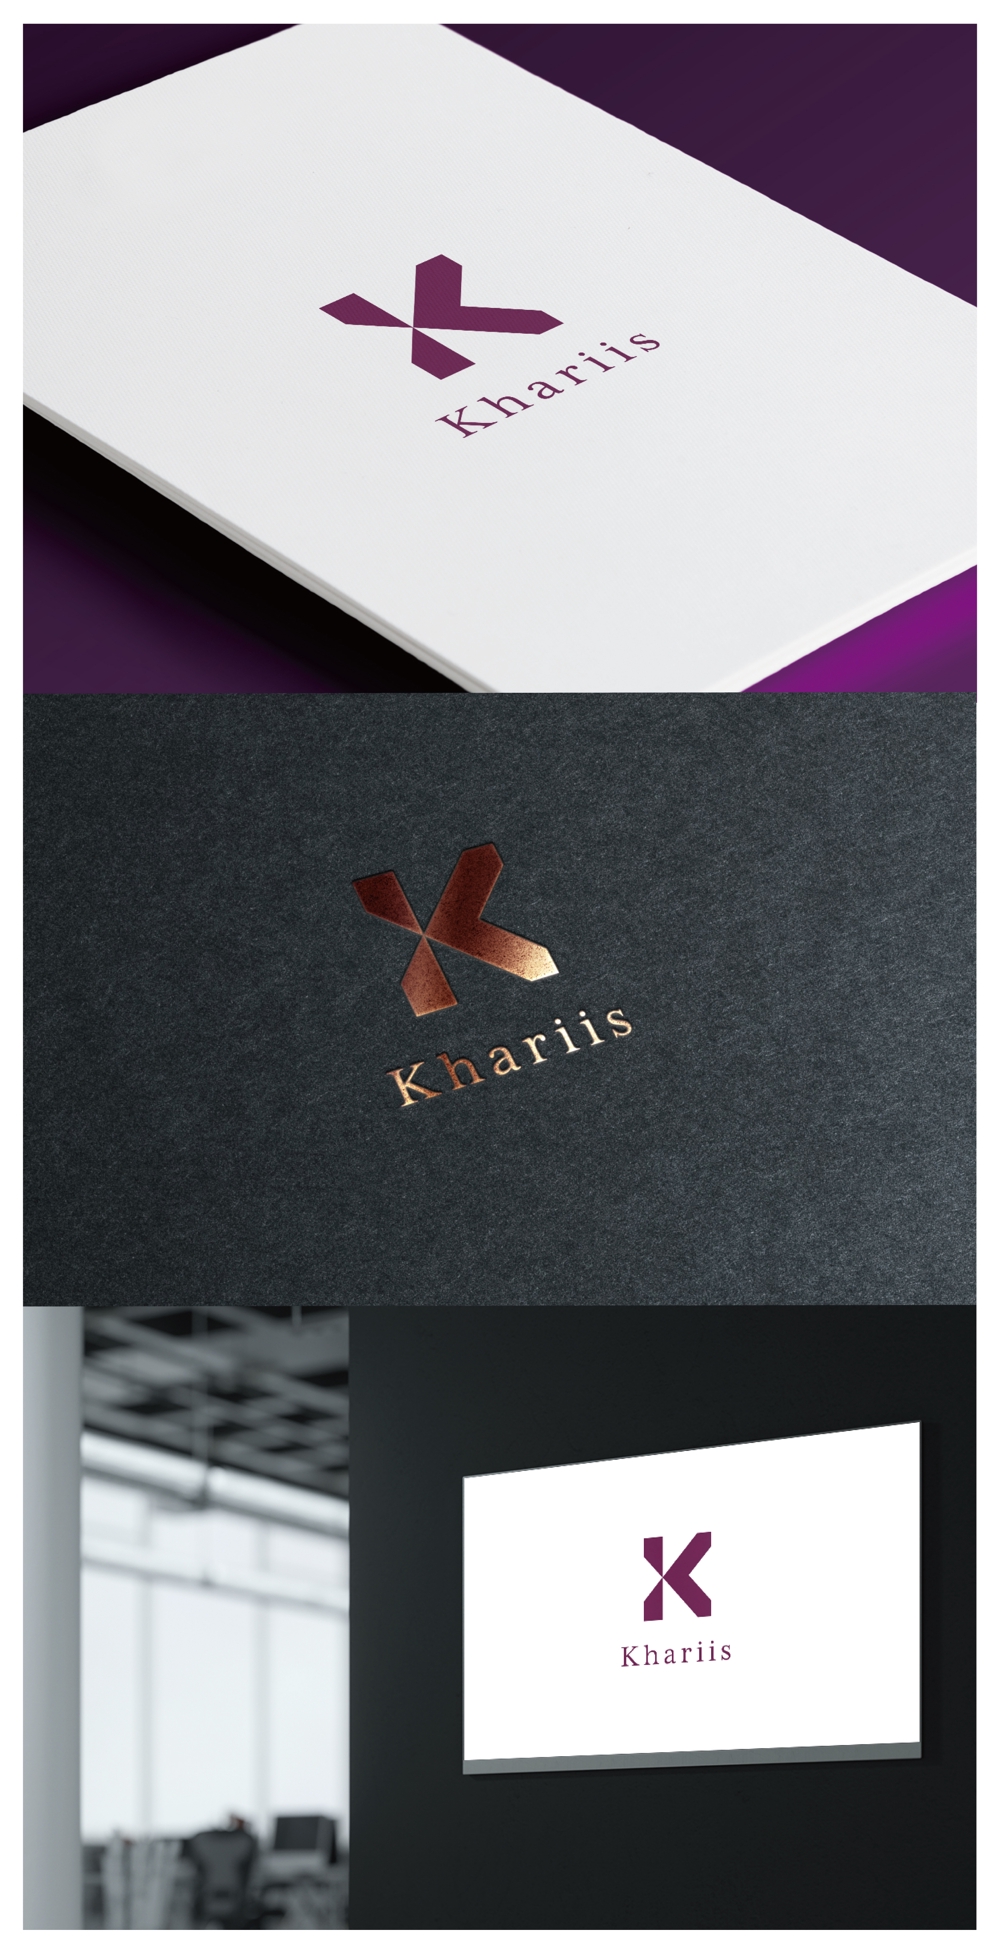 Khariis_logo01_01.jpg